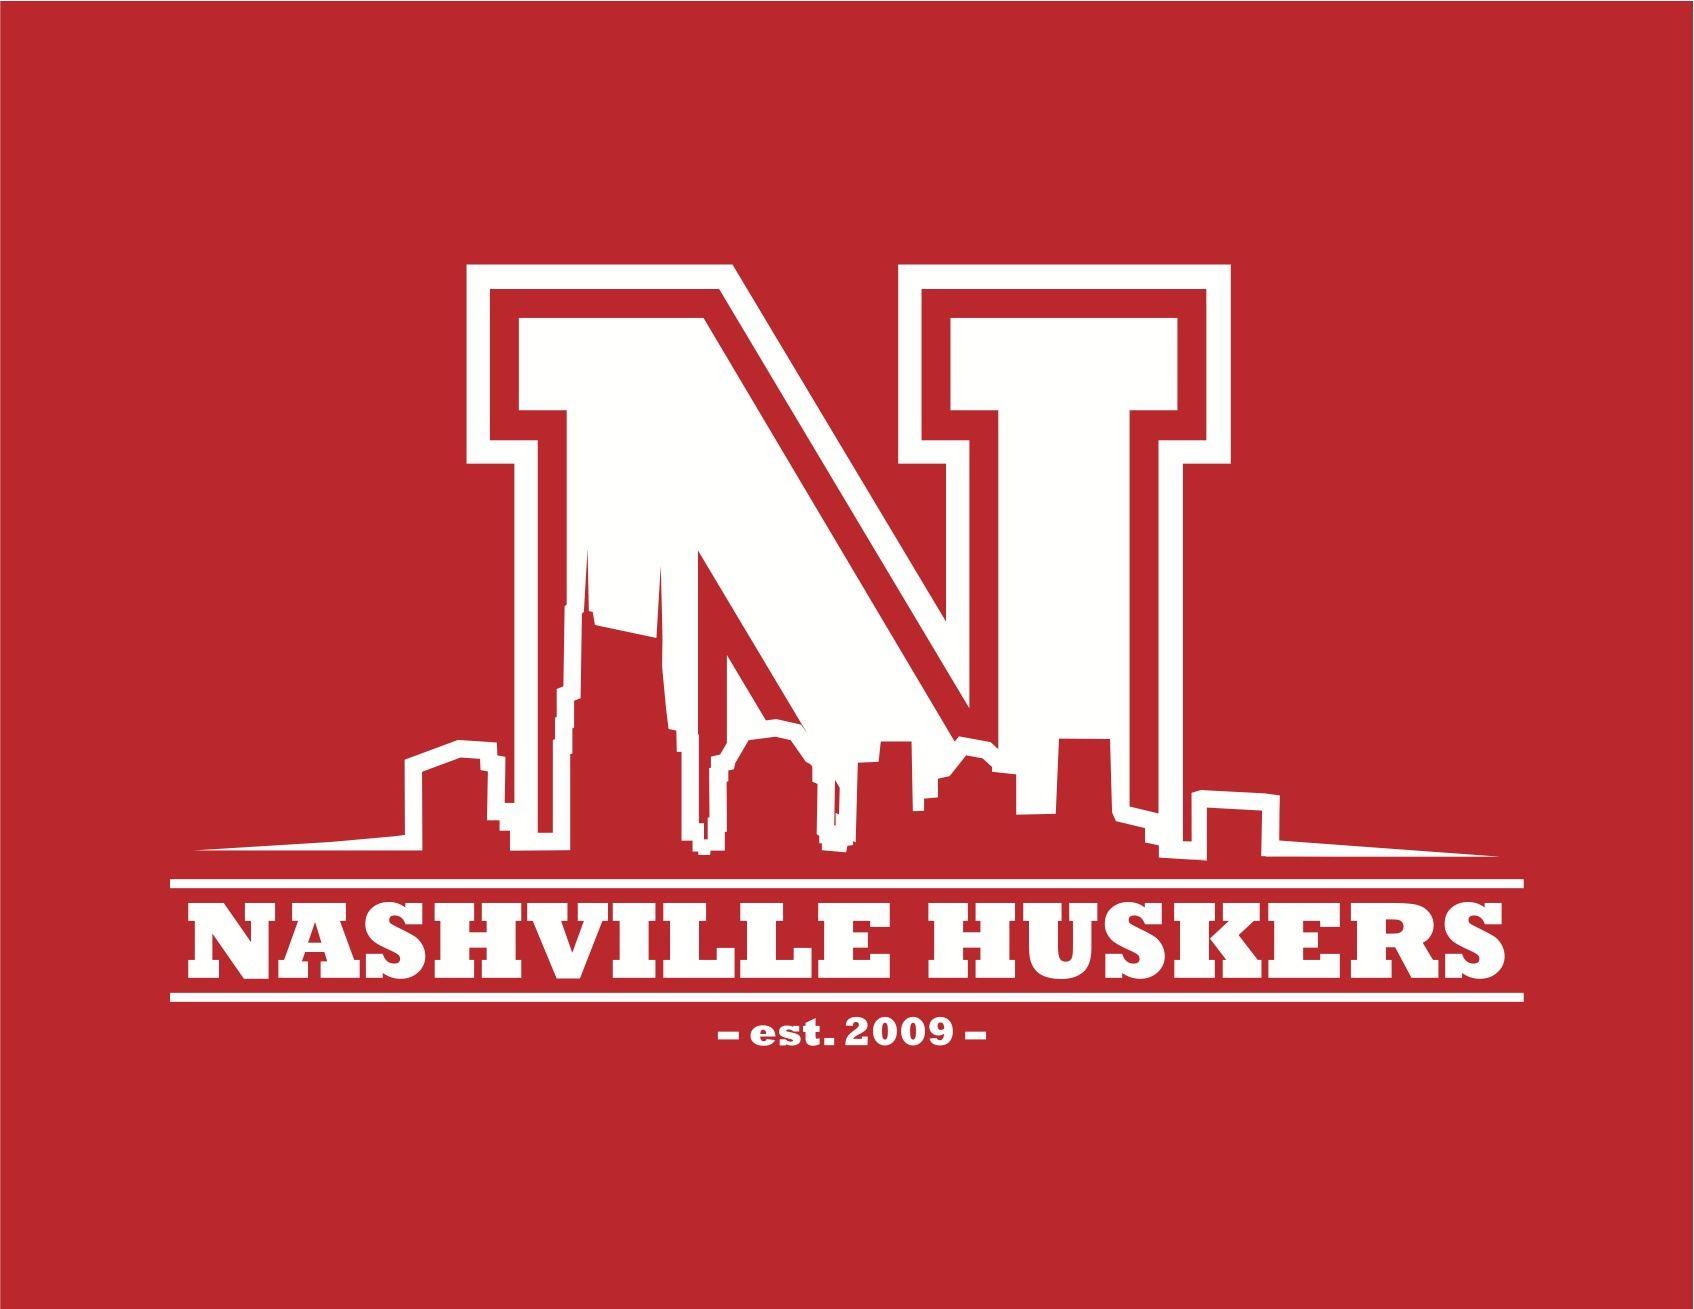 Big Red Husker Logo - Nashville Huskers